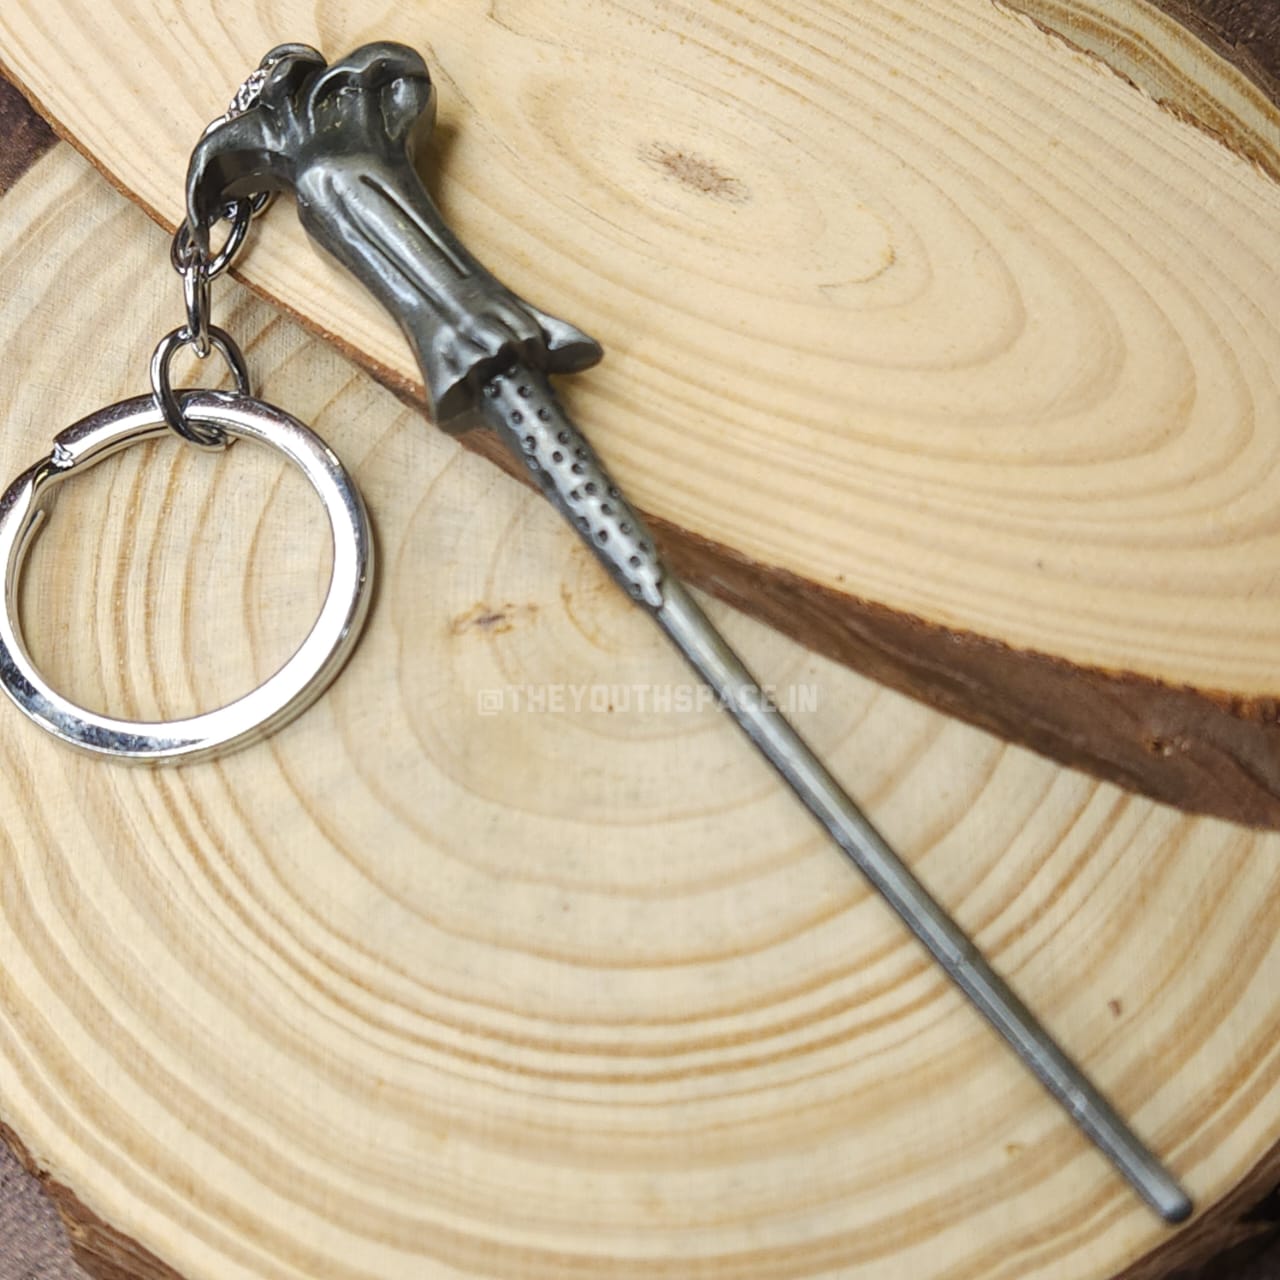 Voldemort wand metal keychain